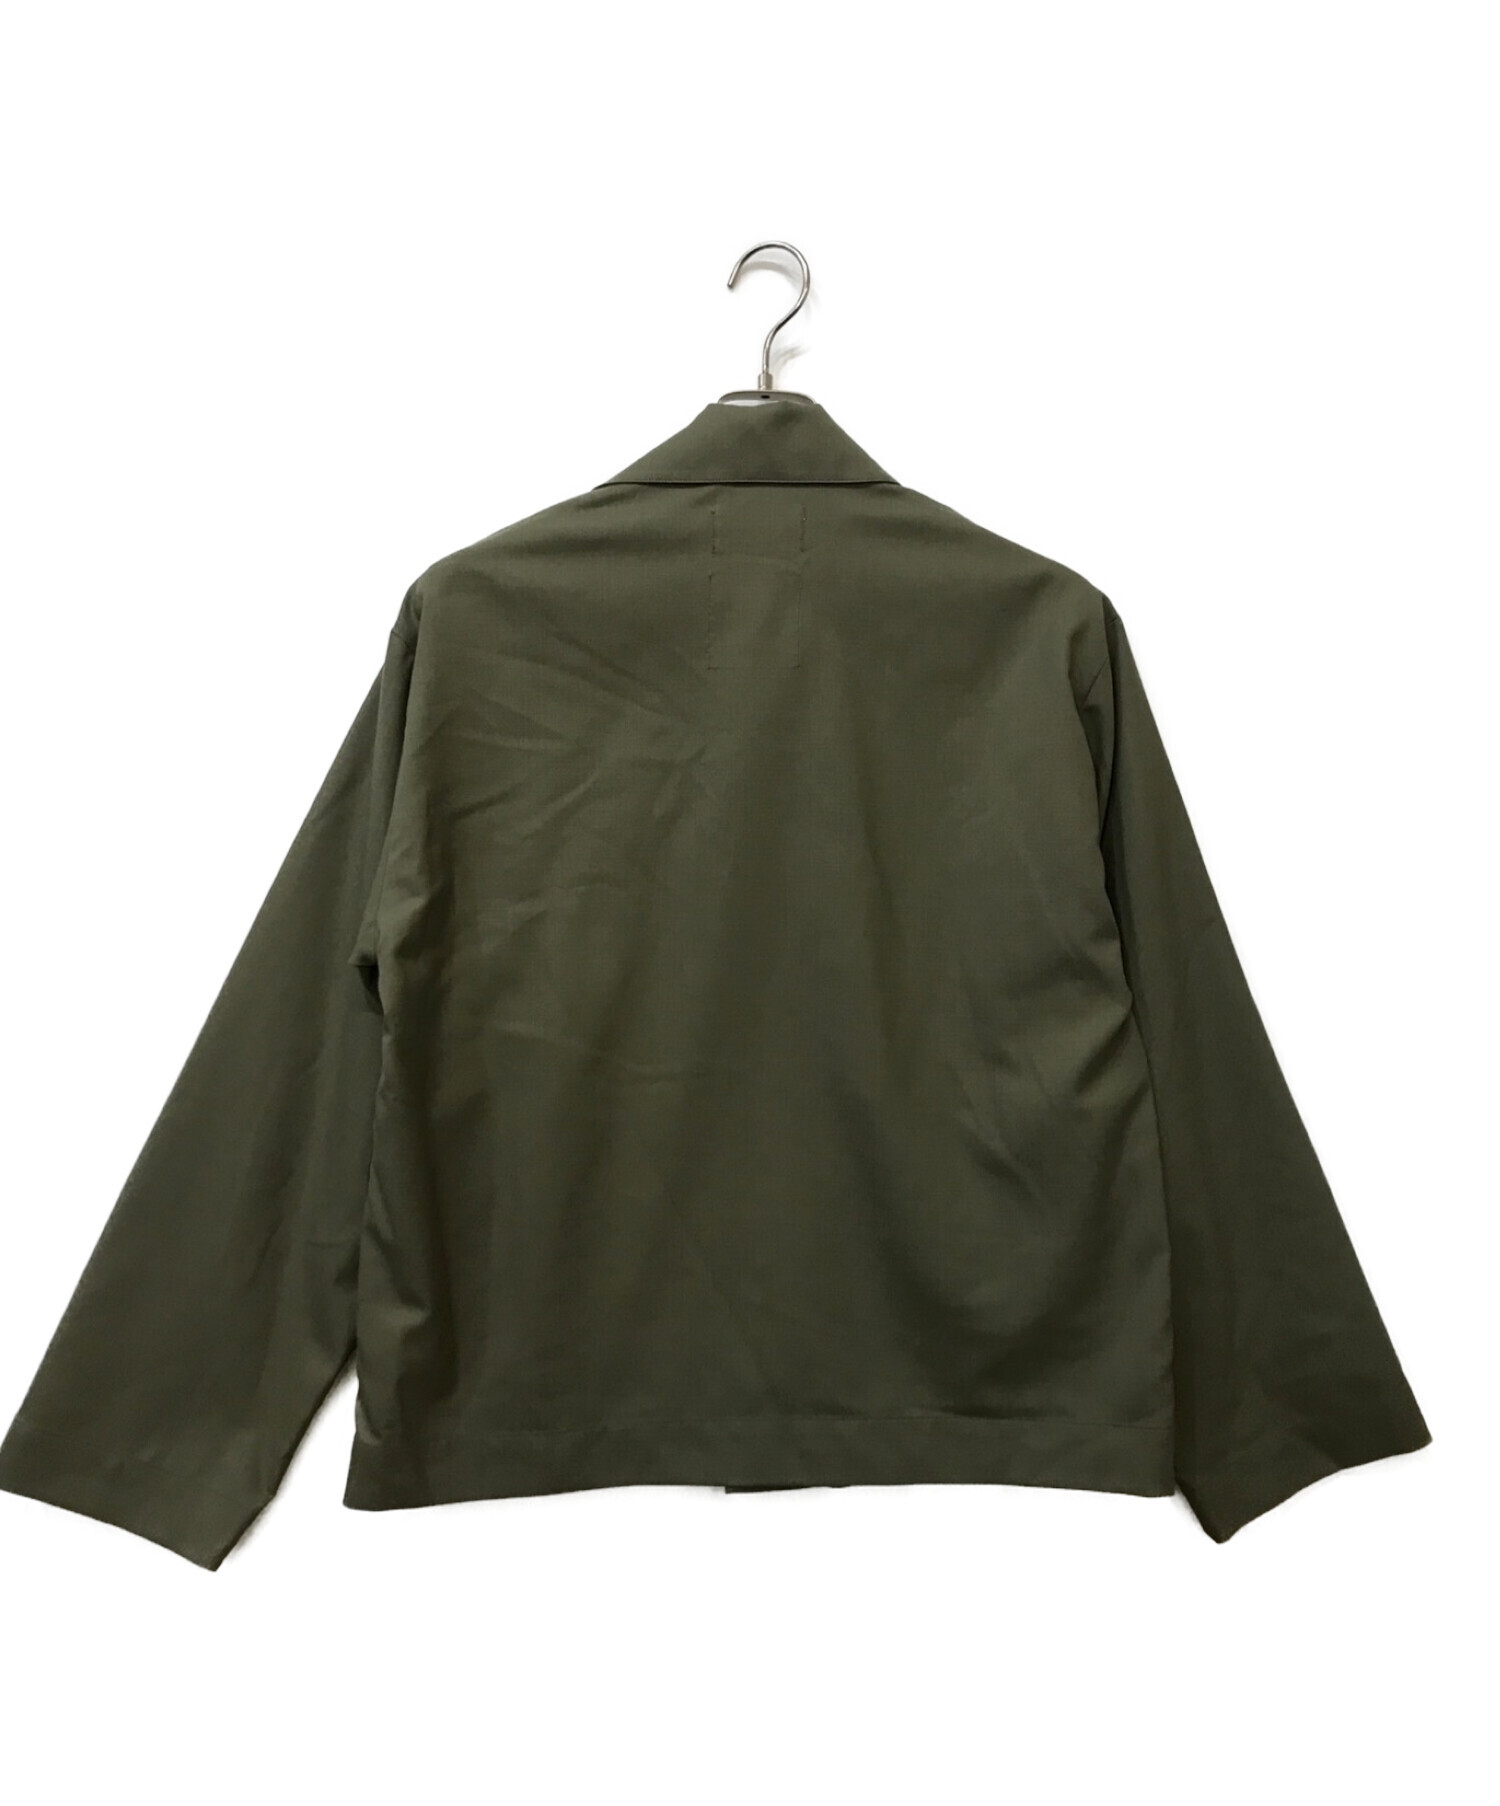 MARKAWARE (マーカウェア) ユーティリティ- CPOシャツジャケット グリーン サイズ:1